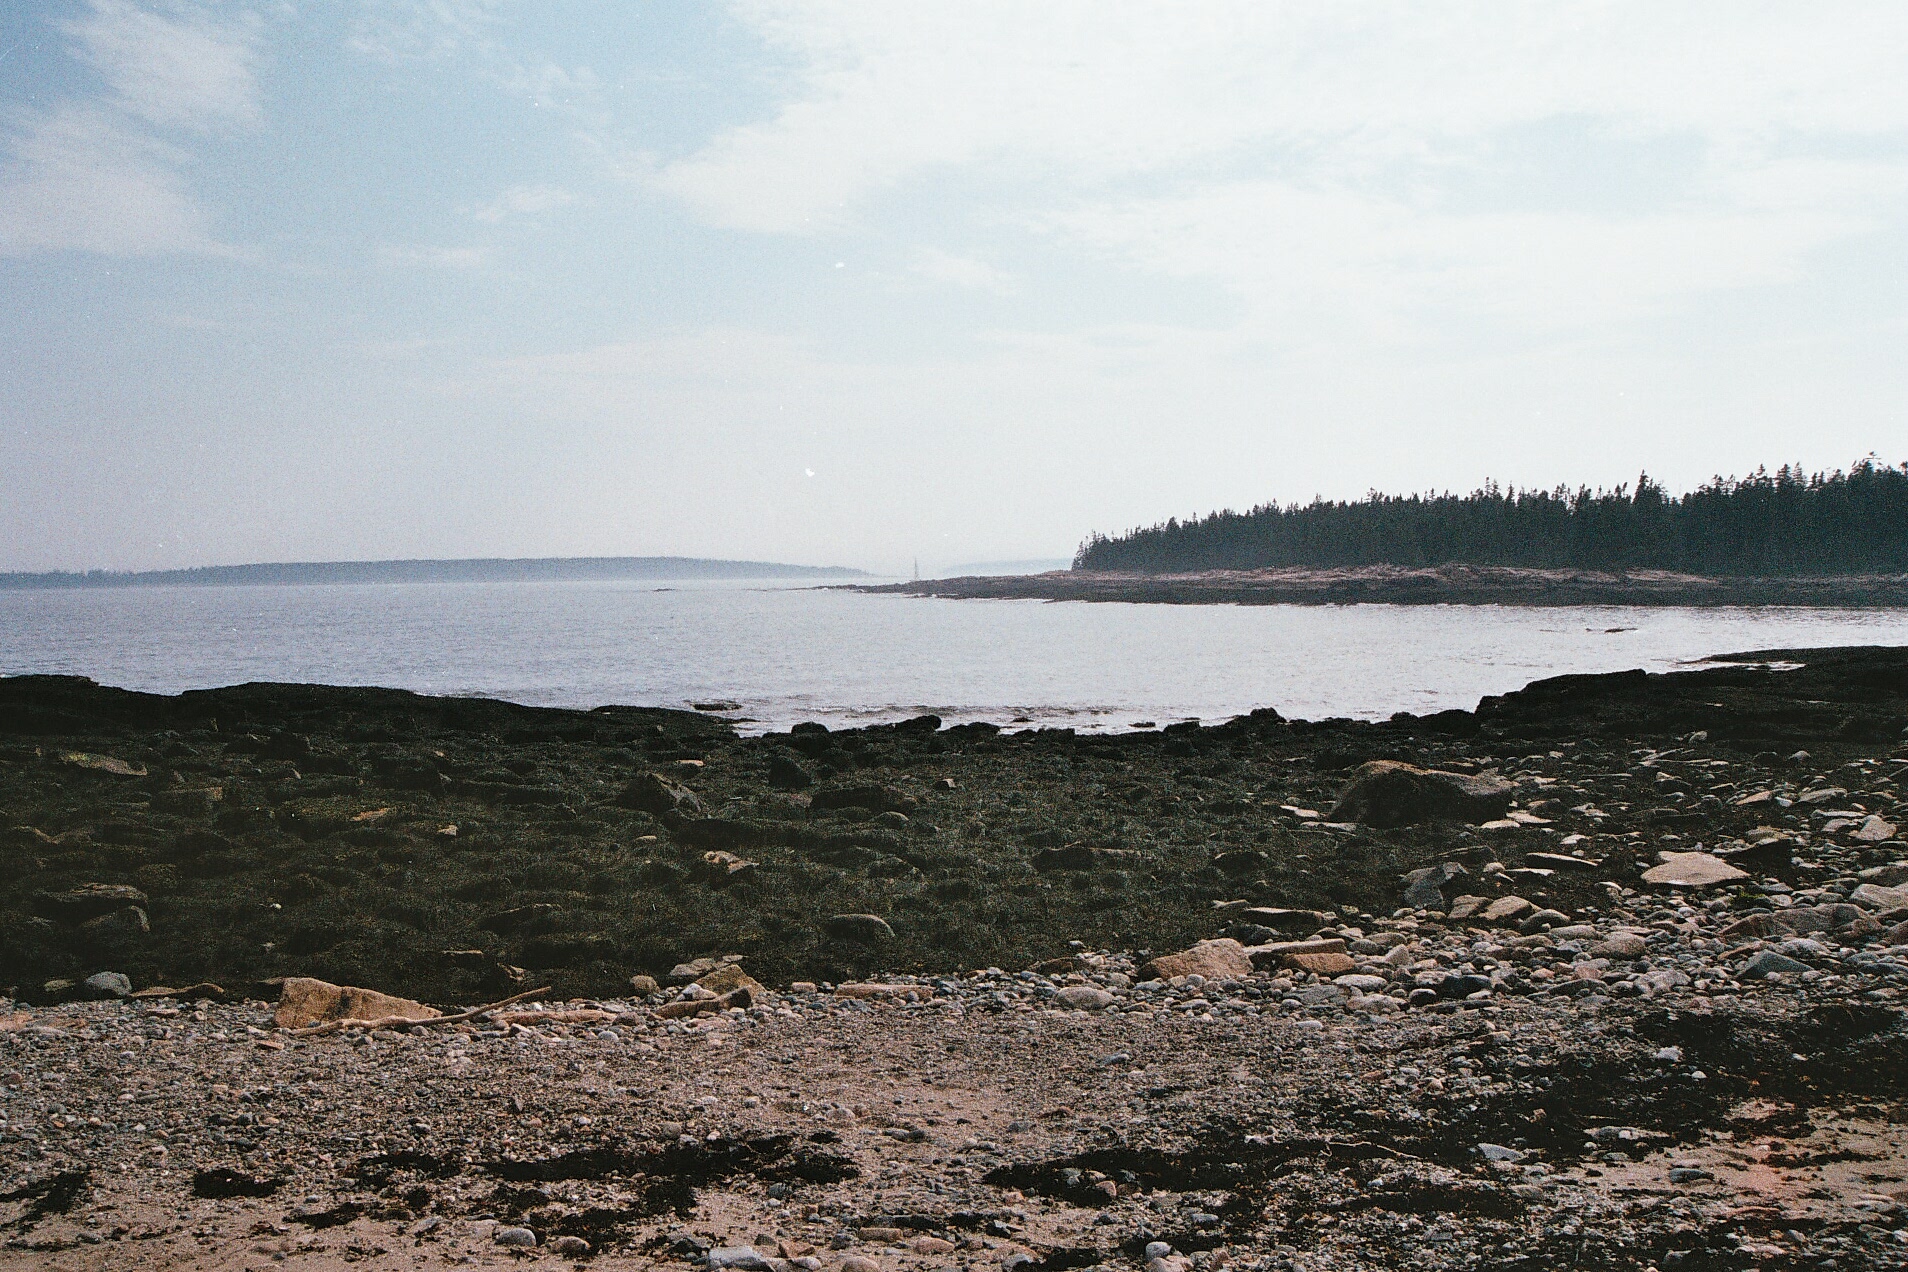   Acadia, Maine.  35mm film, 2011. 